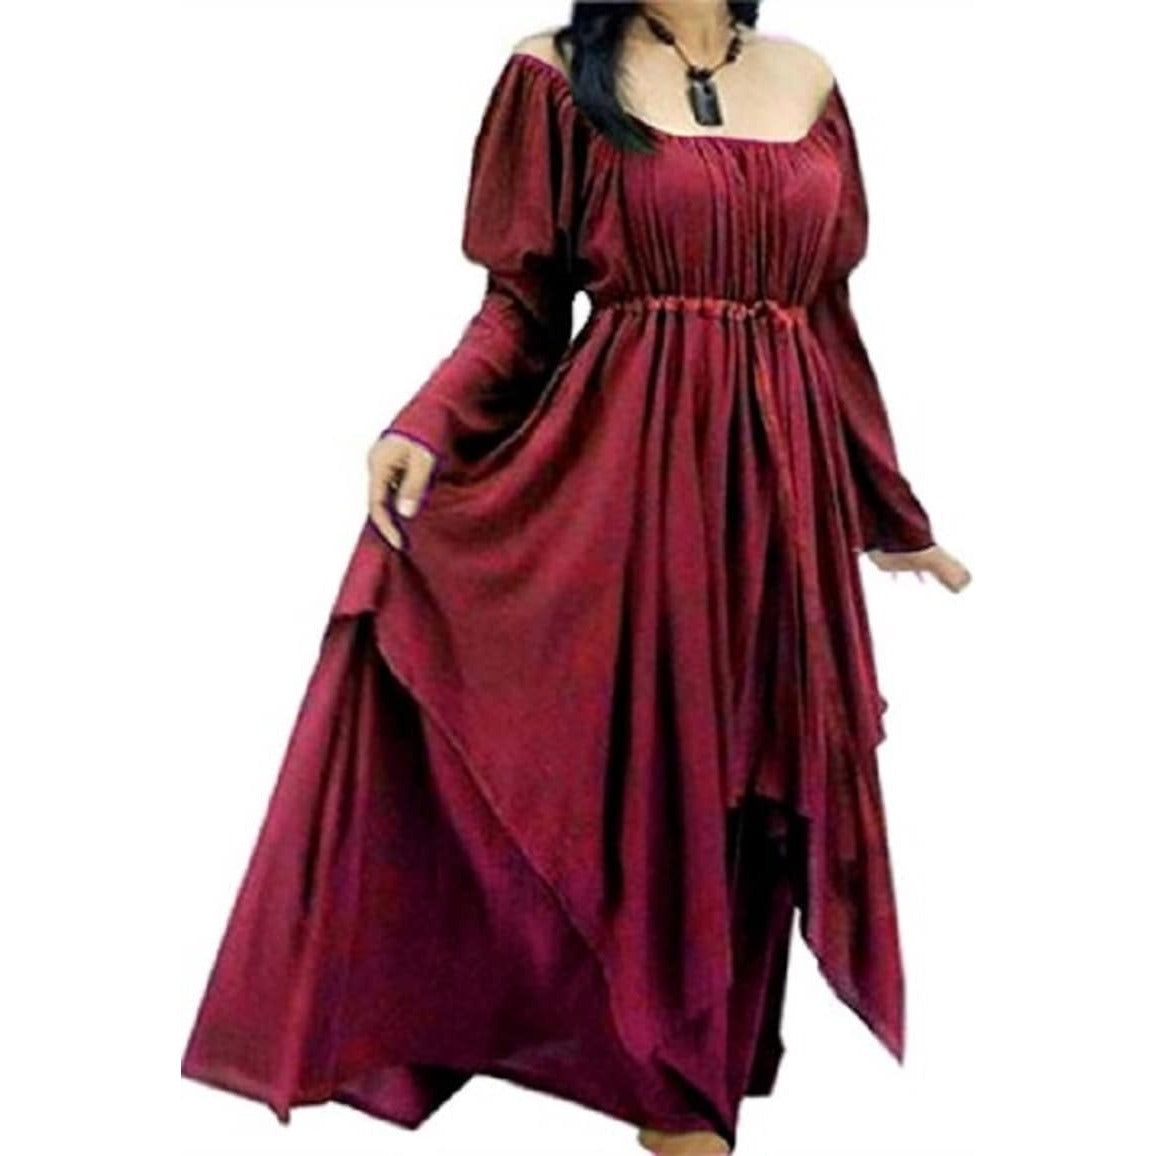 Maren Renaissance Layered Empire Waist Wedding Maxi Dress - The Bohemian Closet